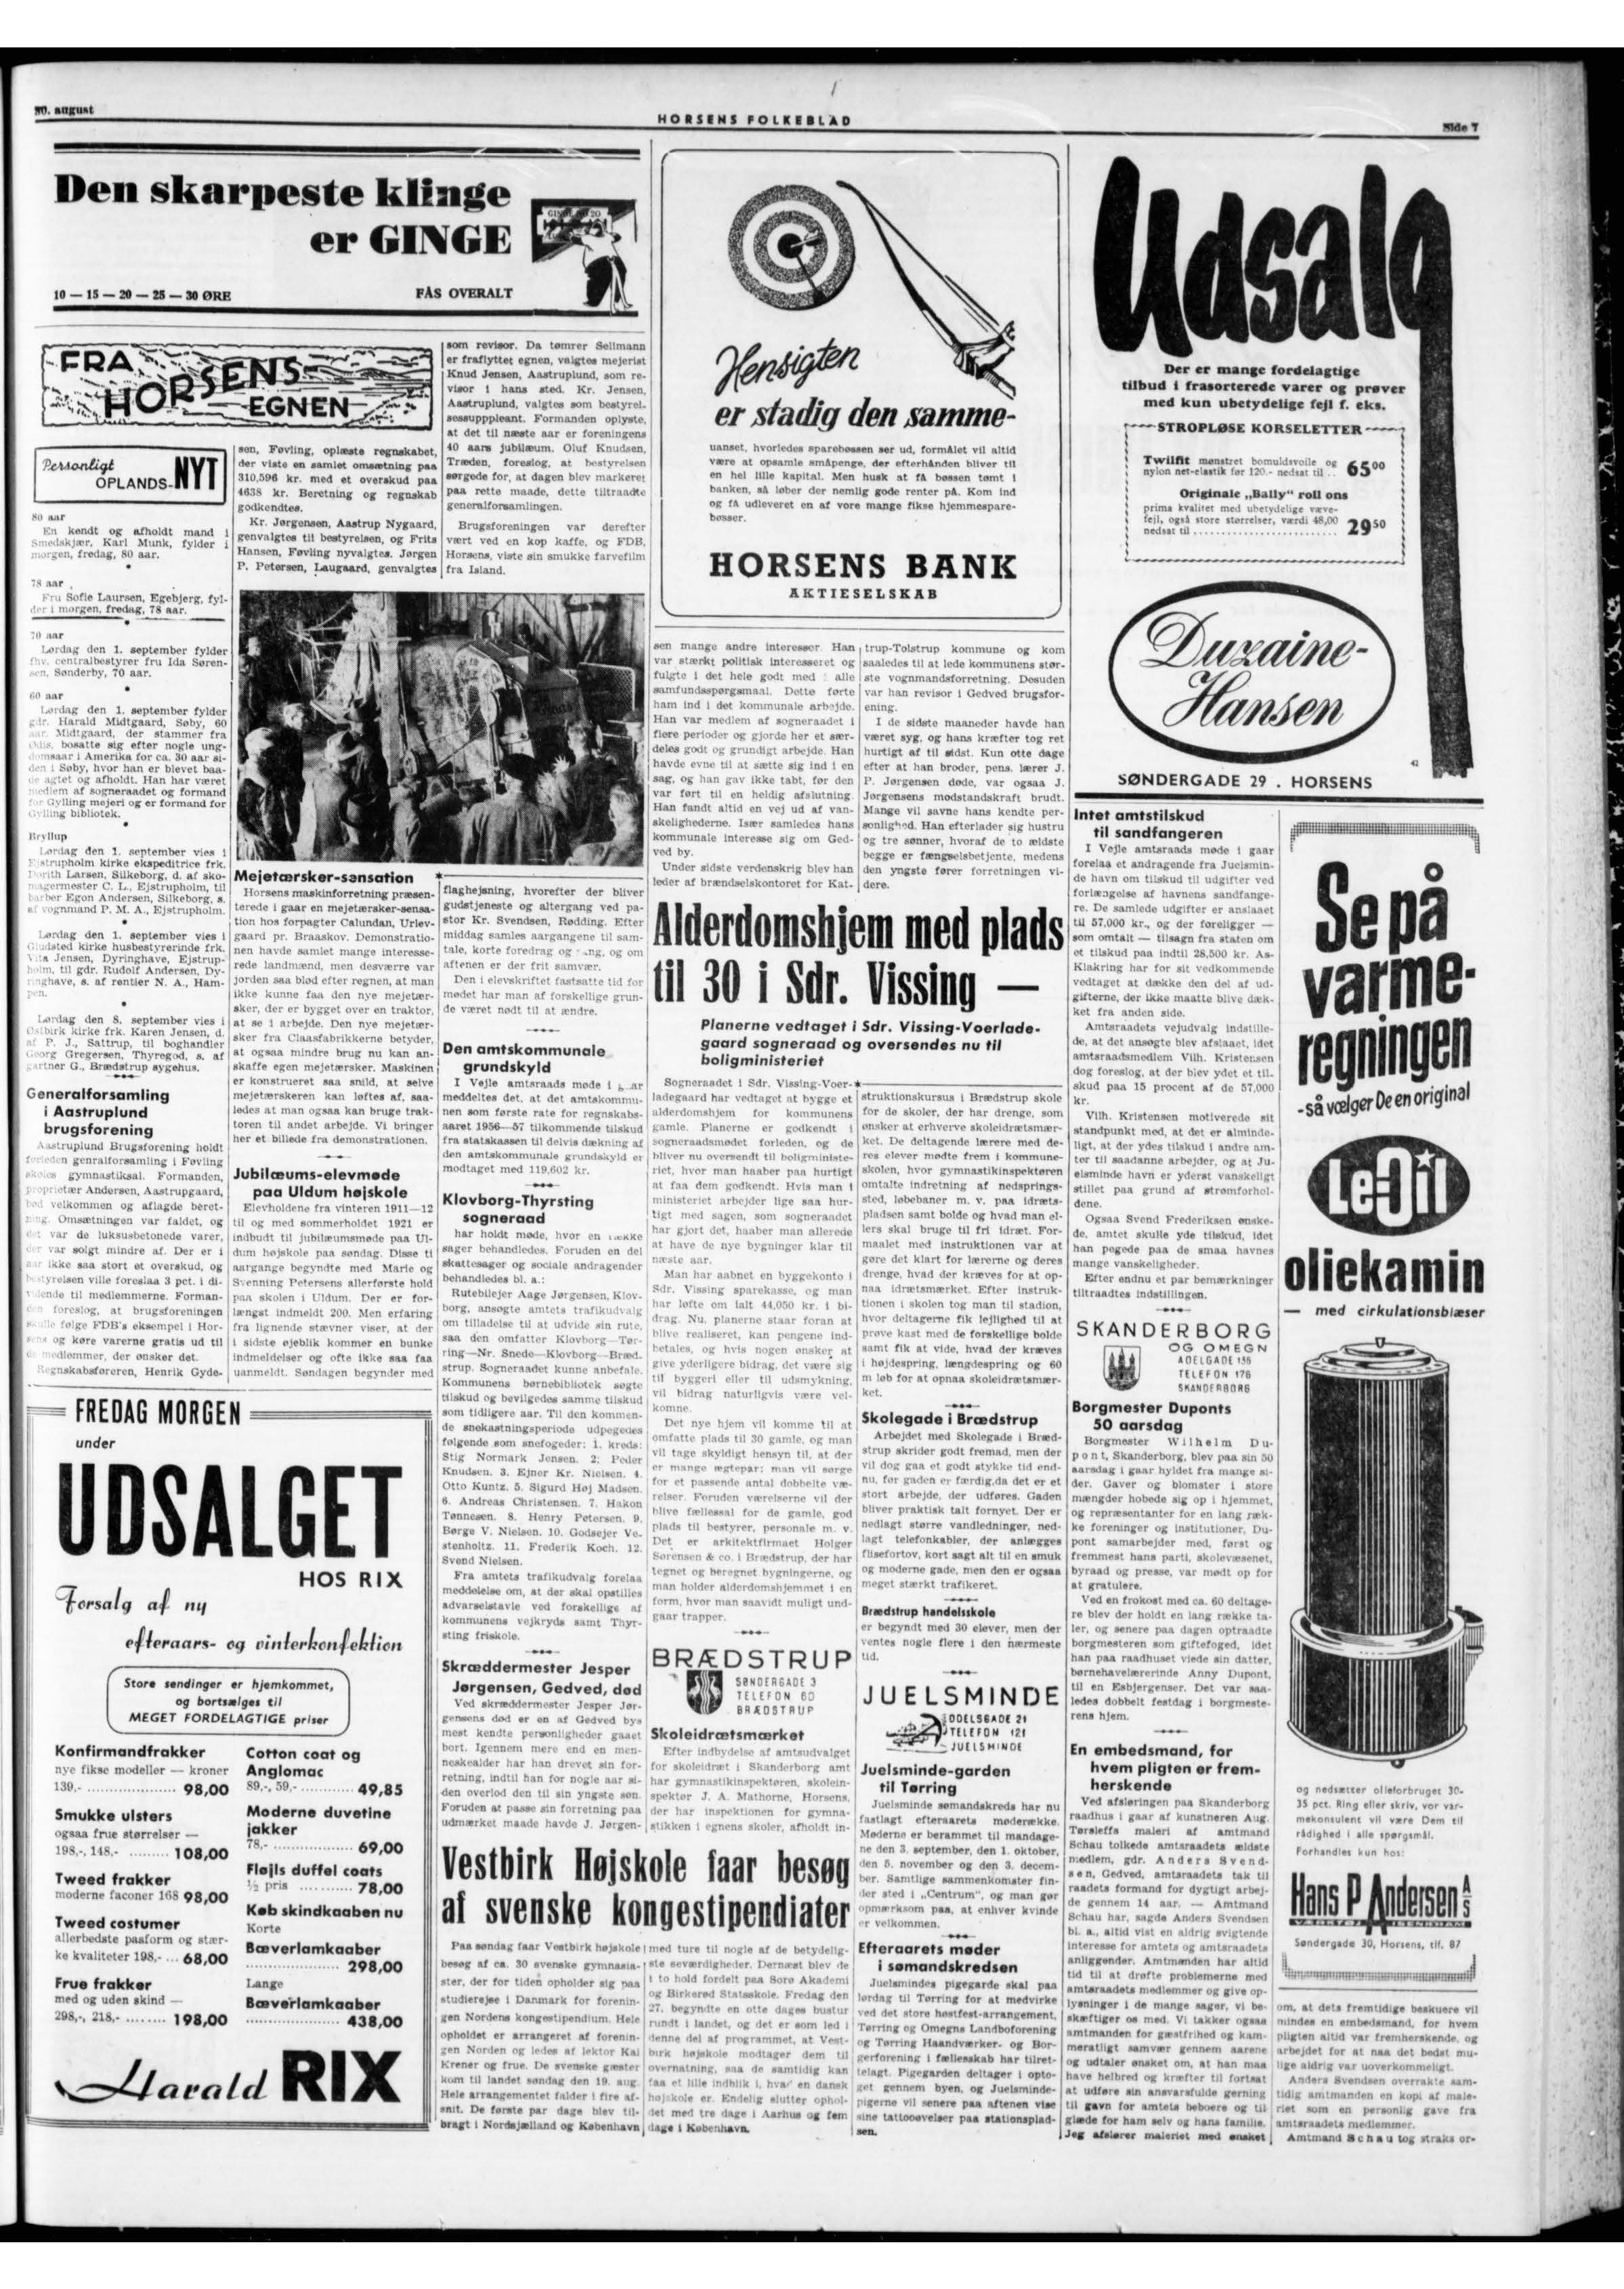 Meddelse om Jesper Jørgensens dødsfald i Horsens Folkeblad d. 30-08-1926 på side 7 i avisen.